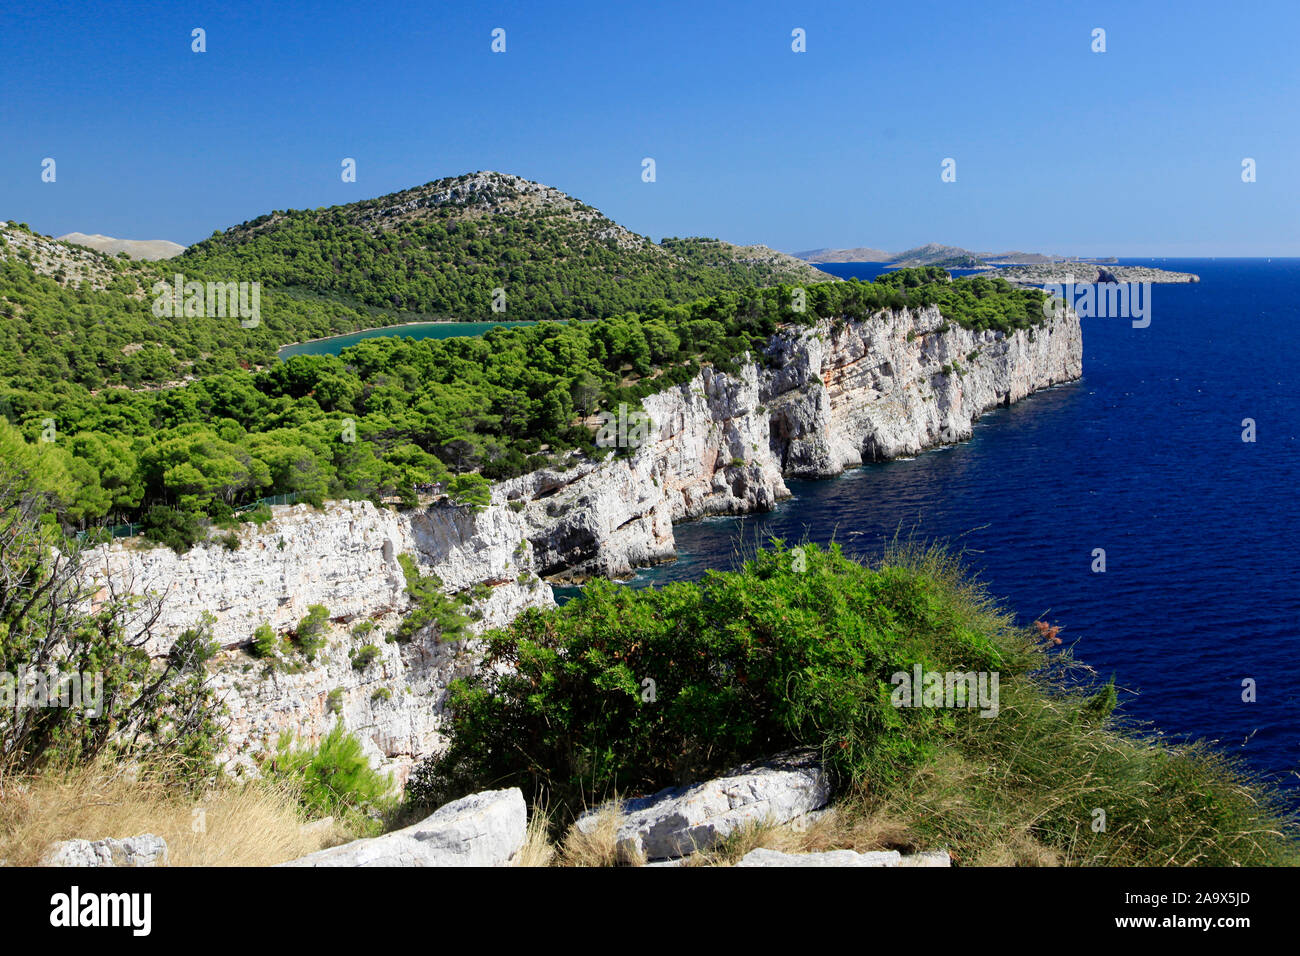 Steilküste mit Salzsee der Insel Dugi otok in der Adria, Kroatien Stock Photo